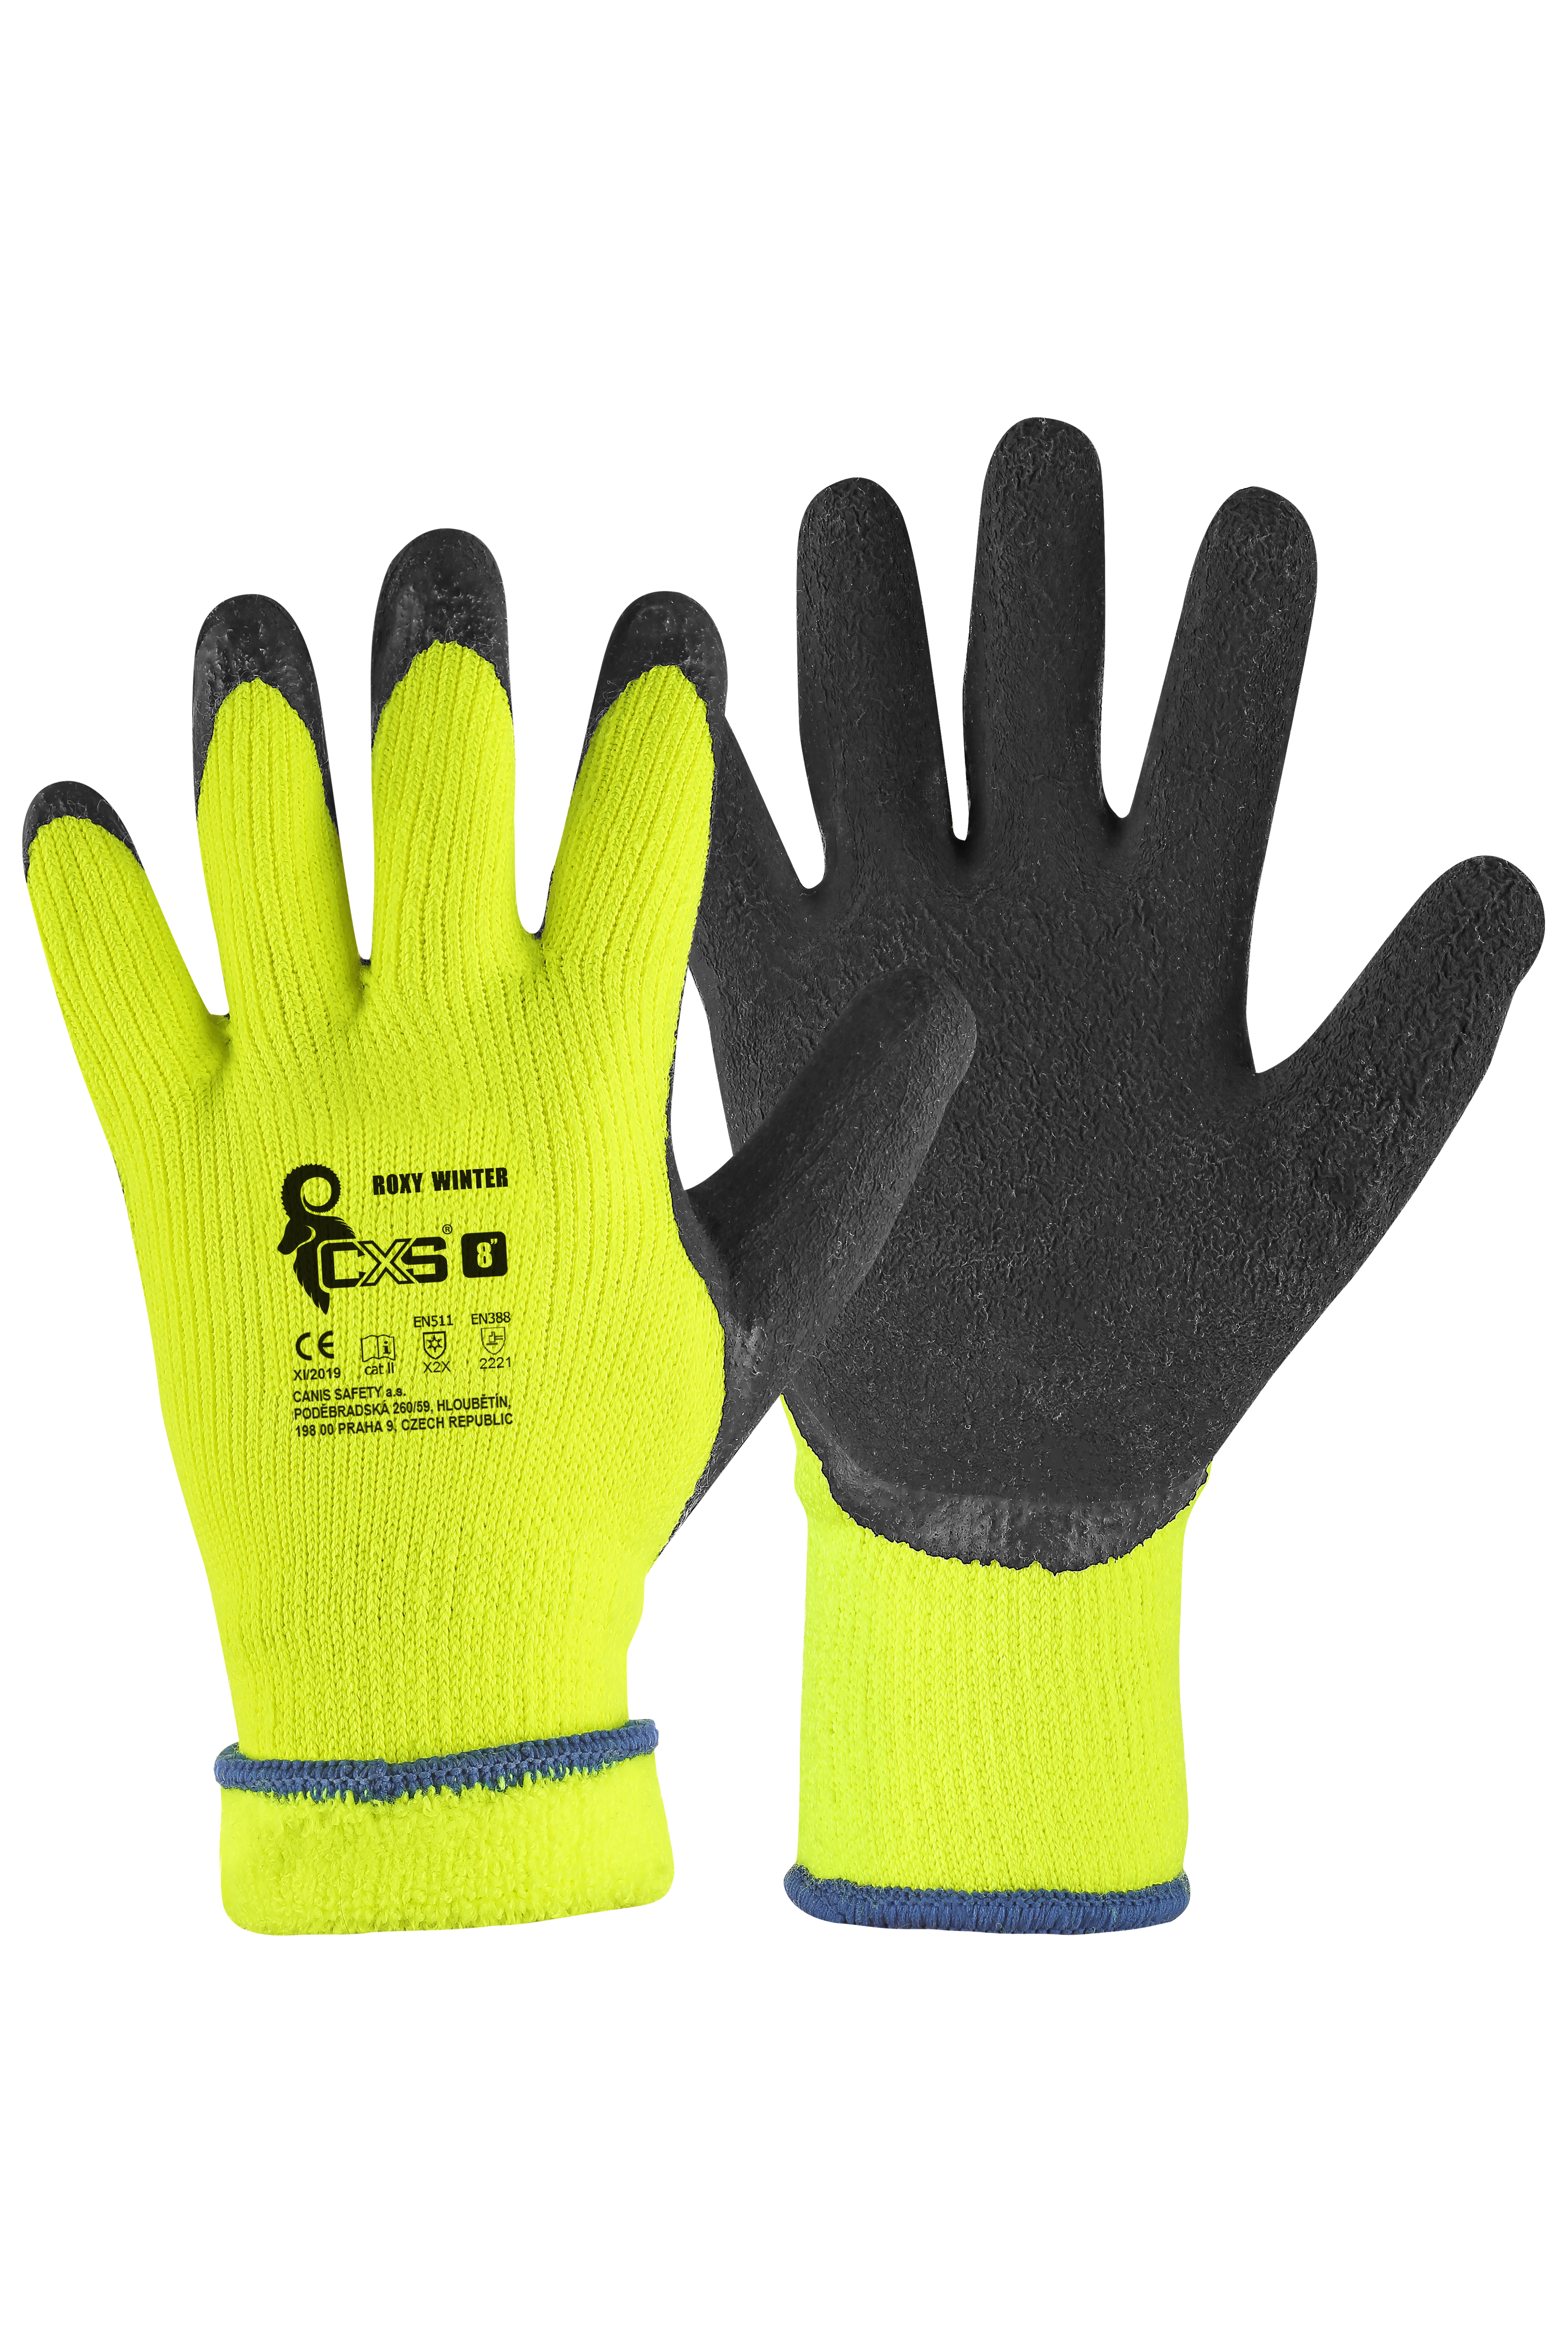 rukavice Roxy Winter, zimní, máčené v latexu, velikost 8 0.10 Kg TOP Sklad4 606067 18